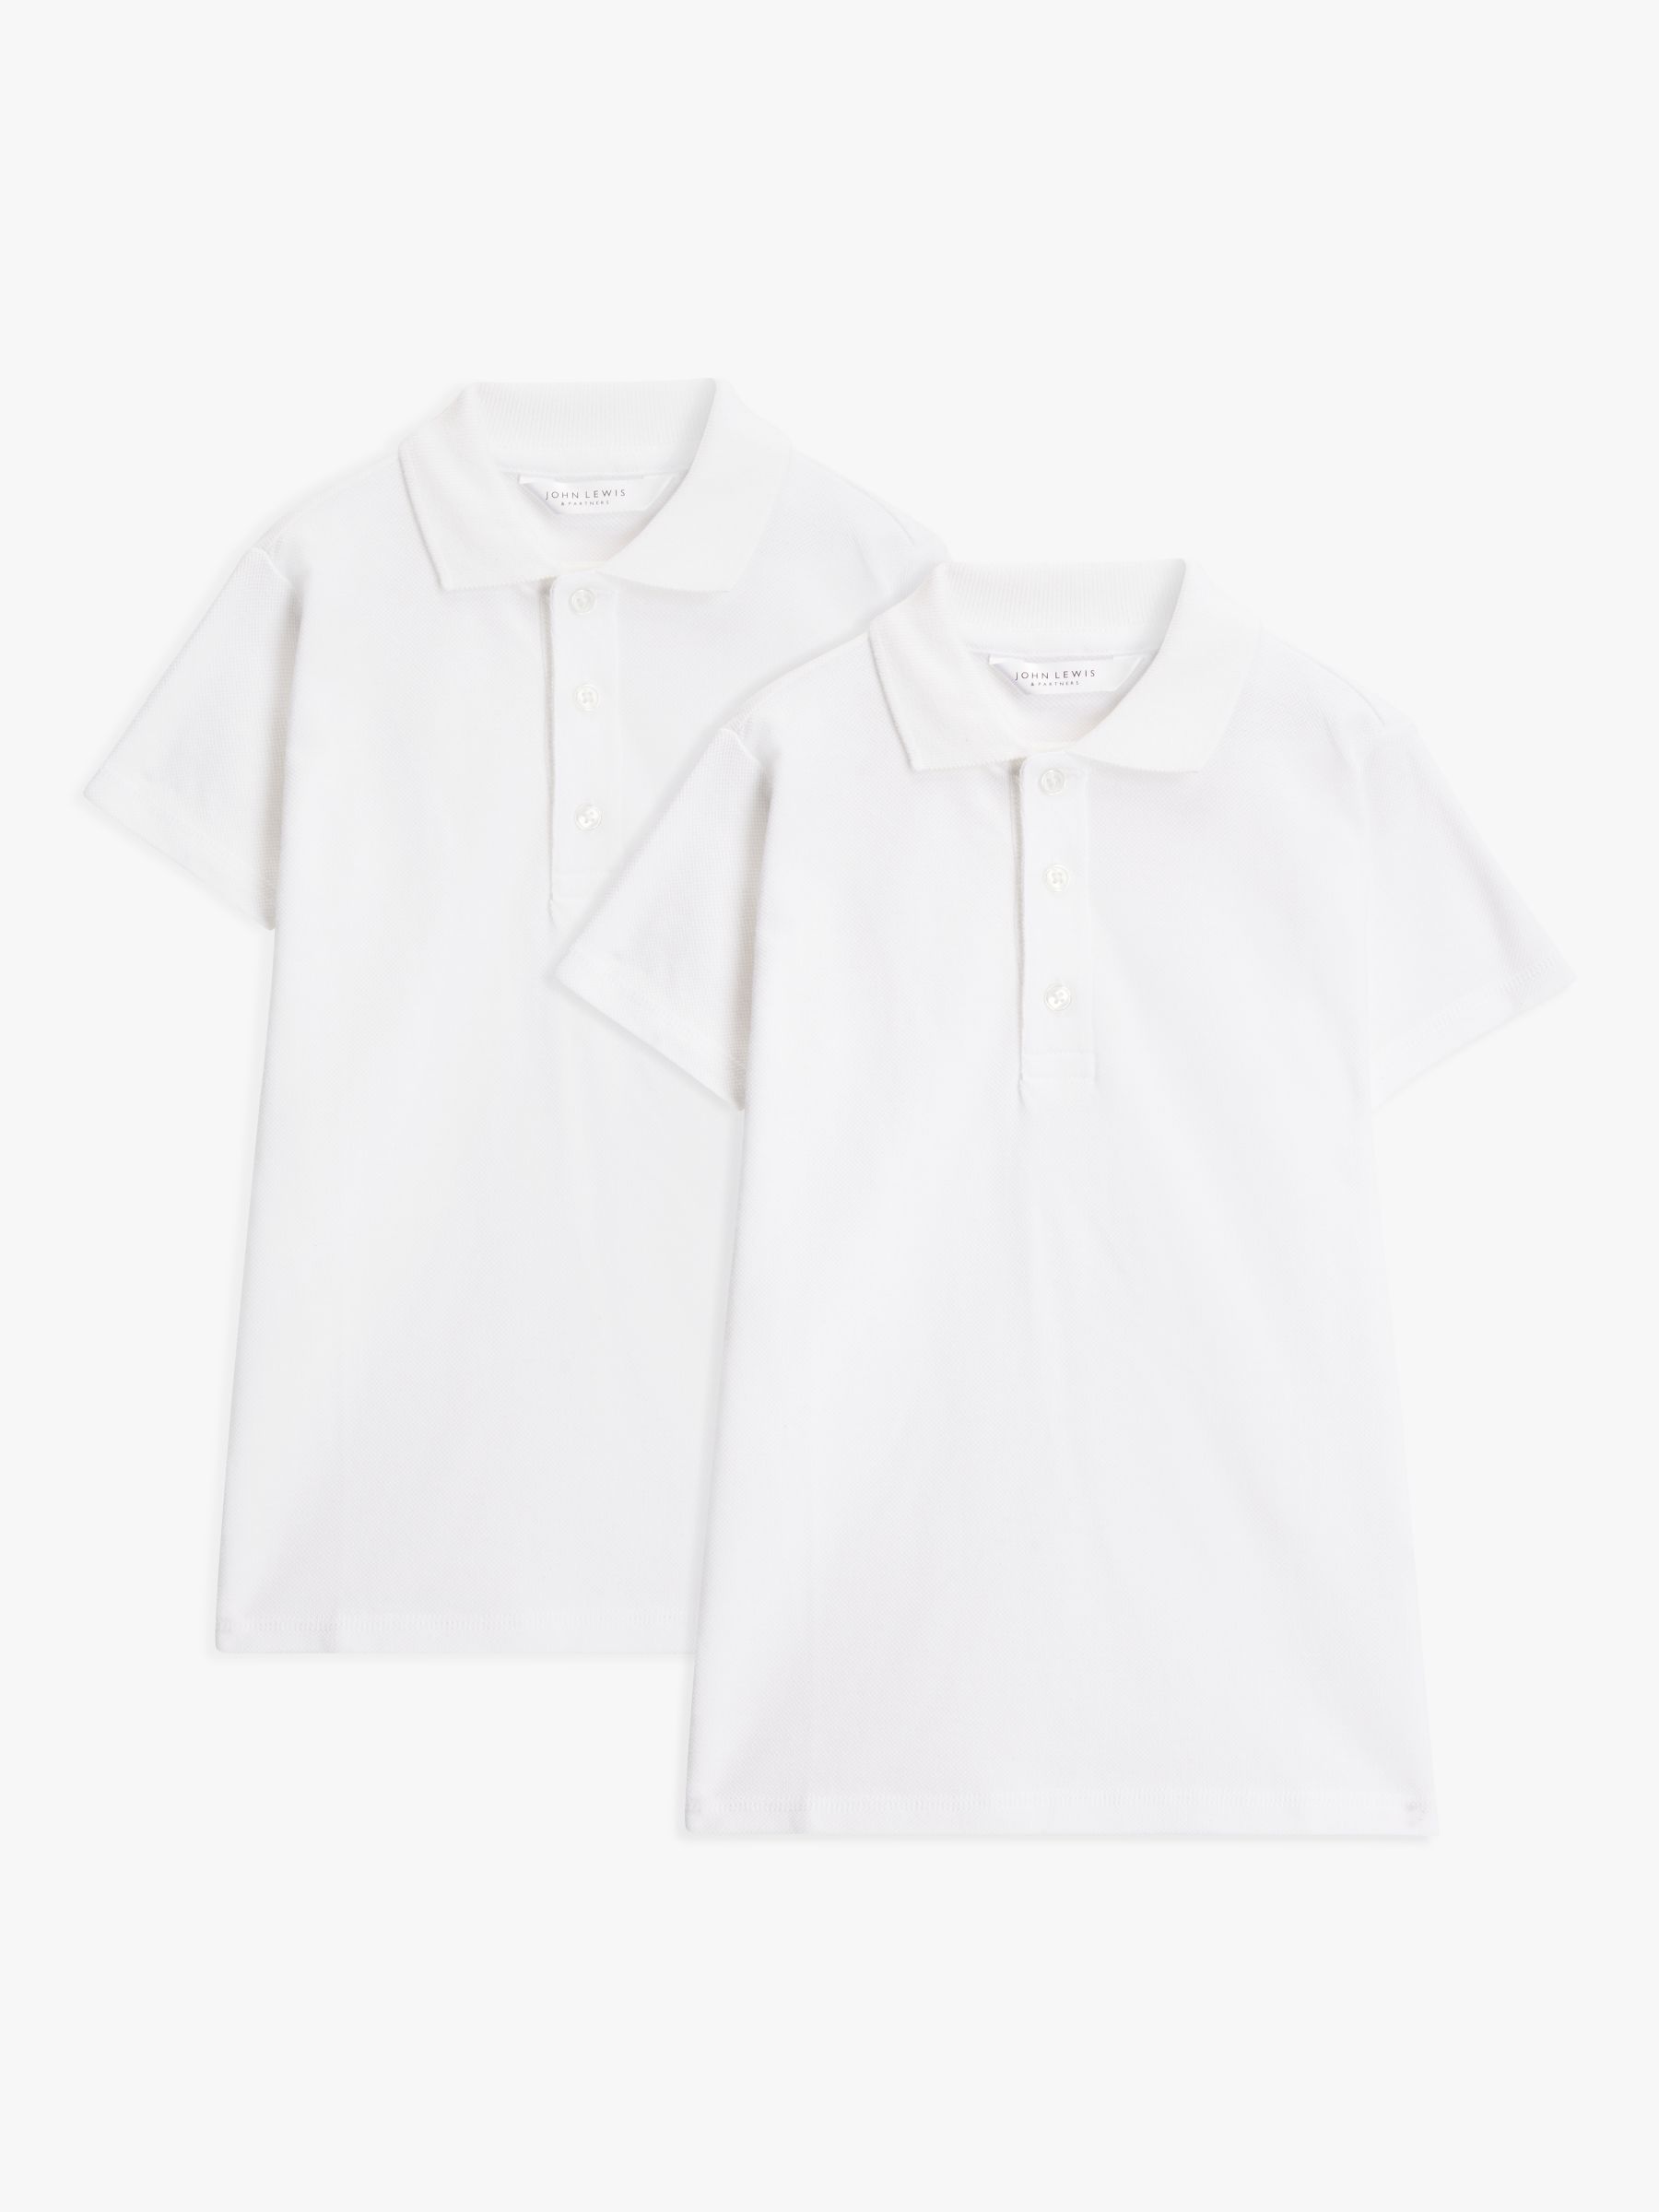 John Lewis Girls Long Sleeve Blue School Open Collar Shirt Brand New RRP £15 